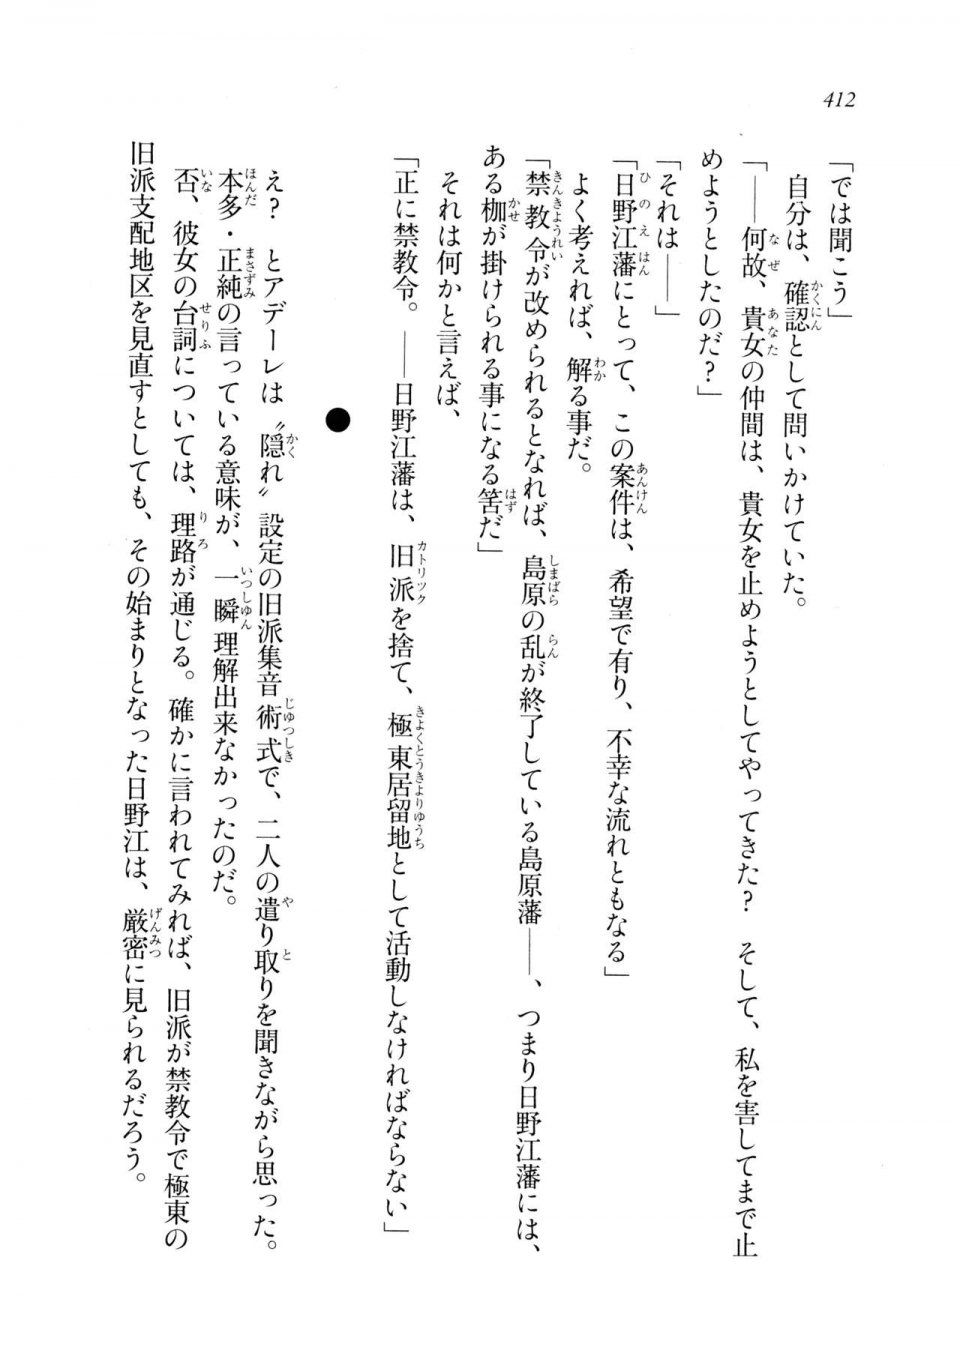 Kyoukai Senjou no Horizon LN Sidestory Vol 2 - Photo #410